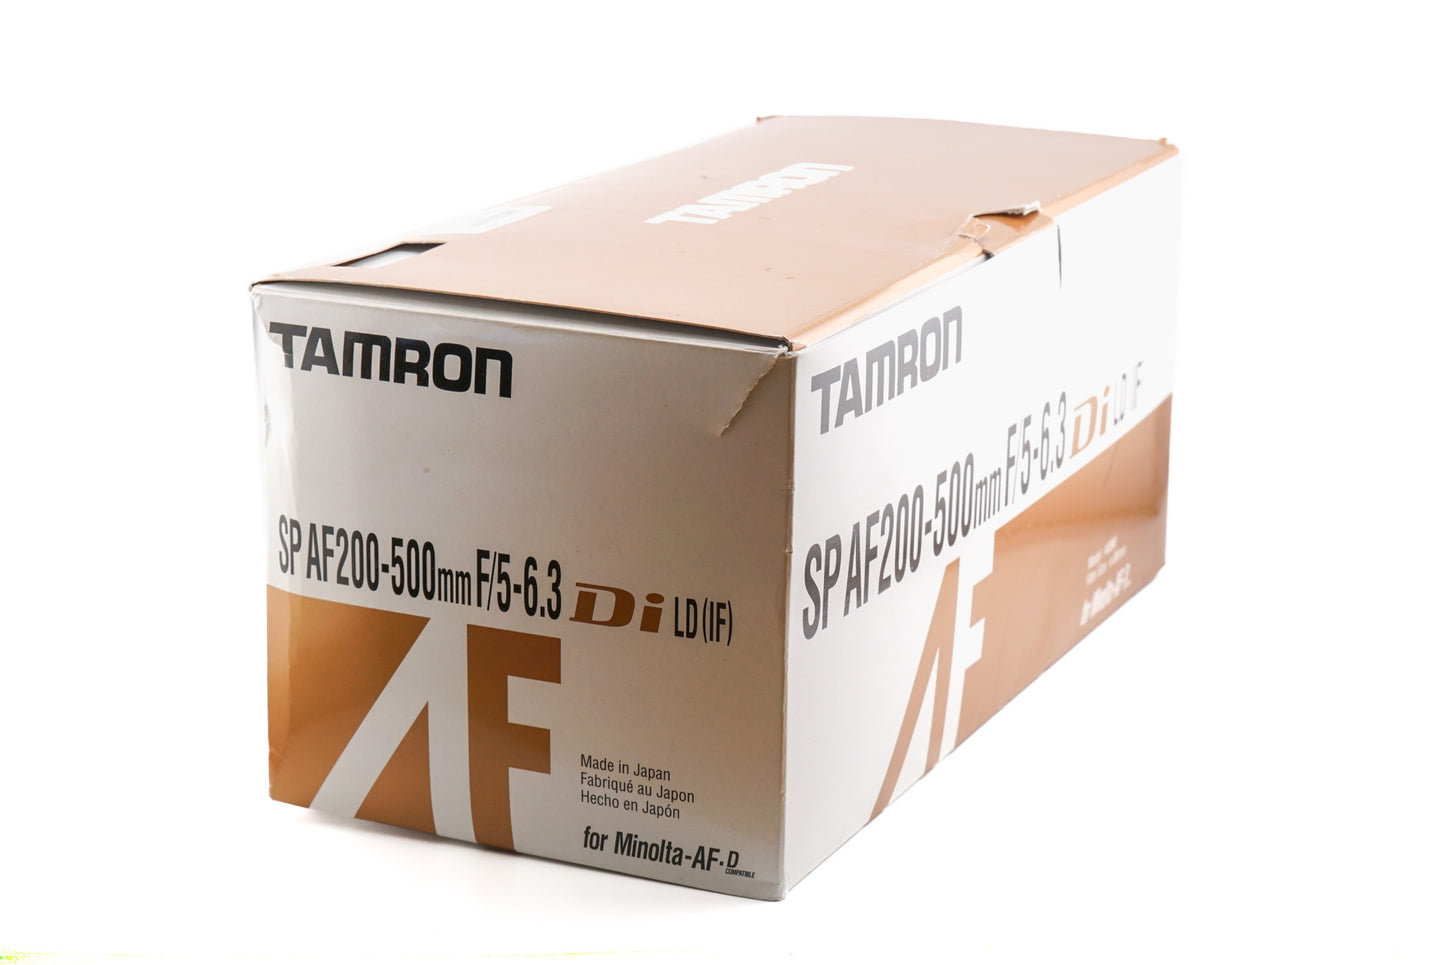 Tamron 200-500mm f5-6.3 SP DI LD IF